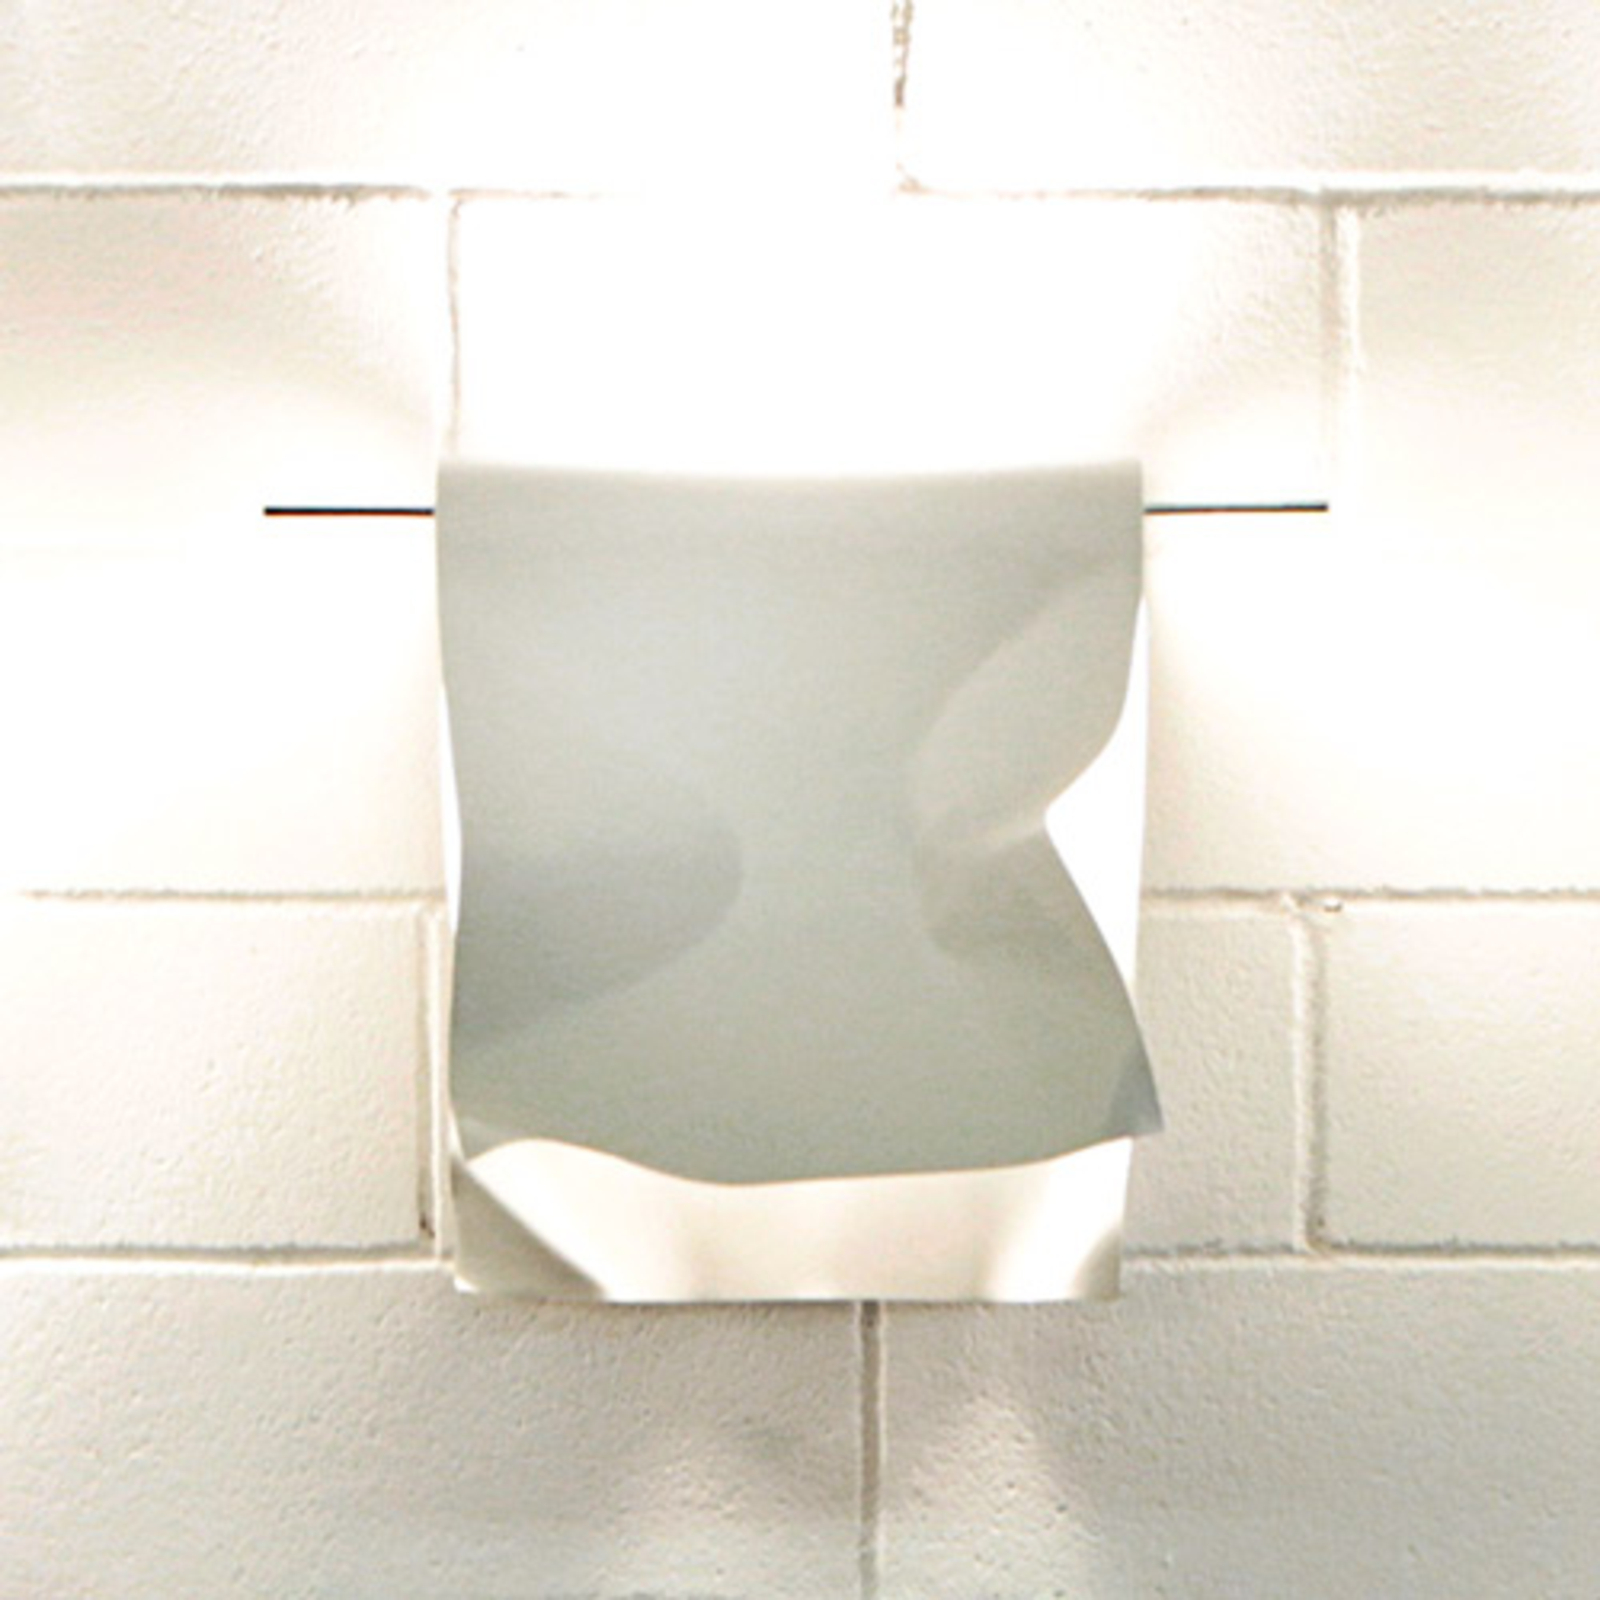 Knikerboker Stendimi - white LED wall light 40 cm